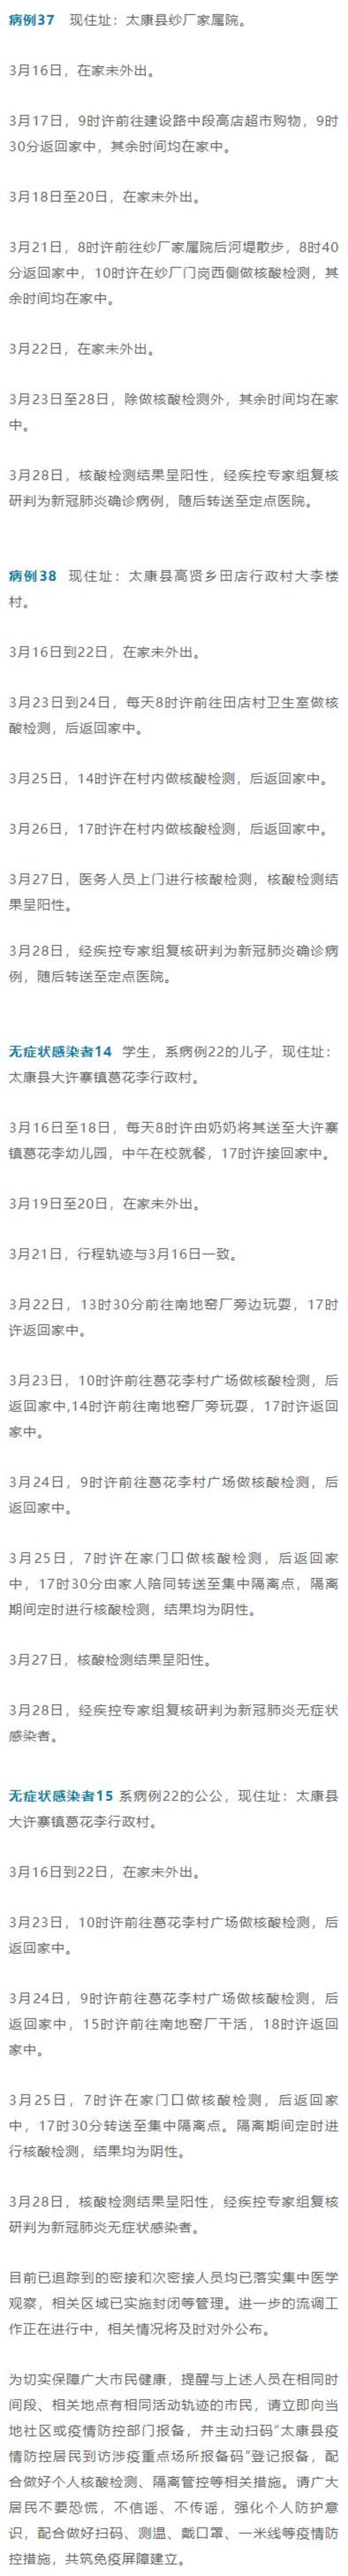 河南太康县公布2例确诊病例和2例无症状感染者活动轨迹